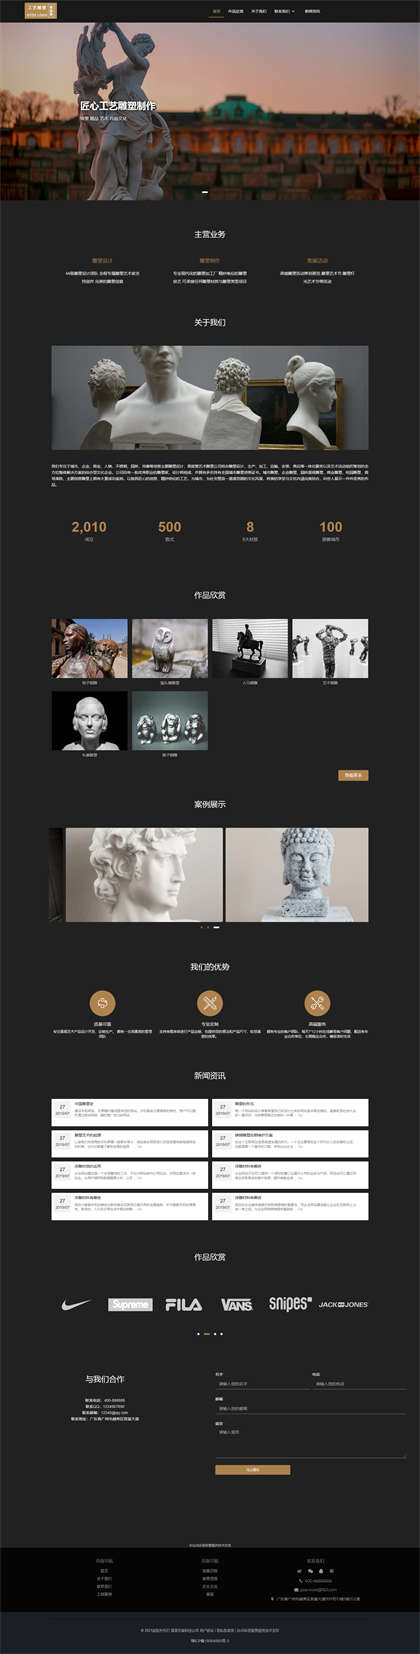 雕塑设计-工艺雕塑-人像雕塑-工艺品制作网站模板网站模板预览图片